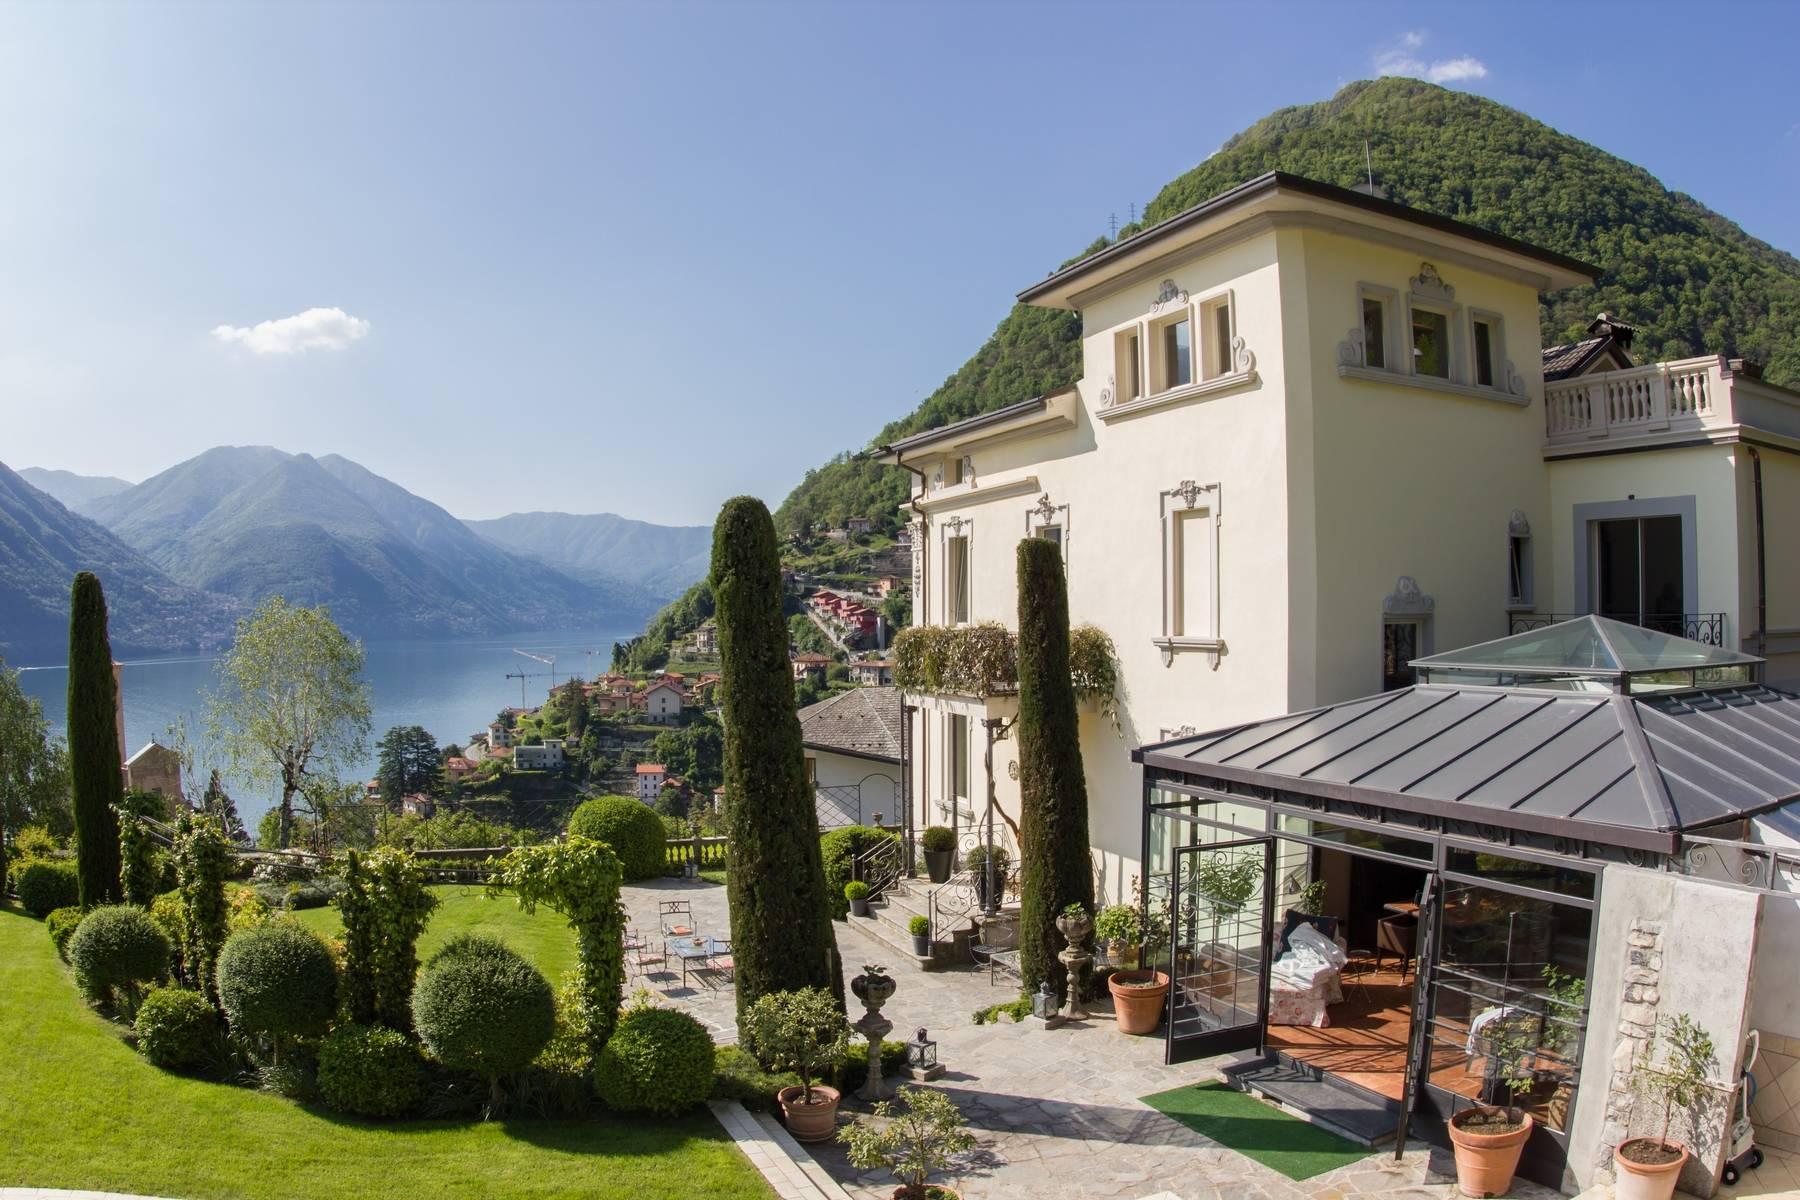 Villa Luminosa - An illustrious estate overlooking Lake Como - 2